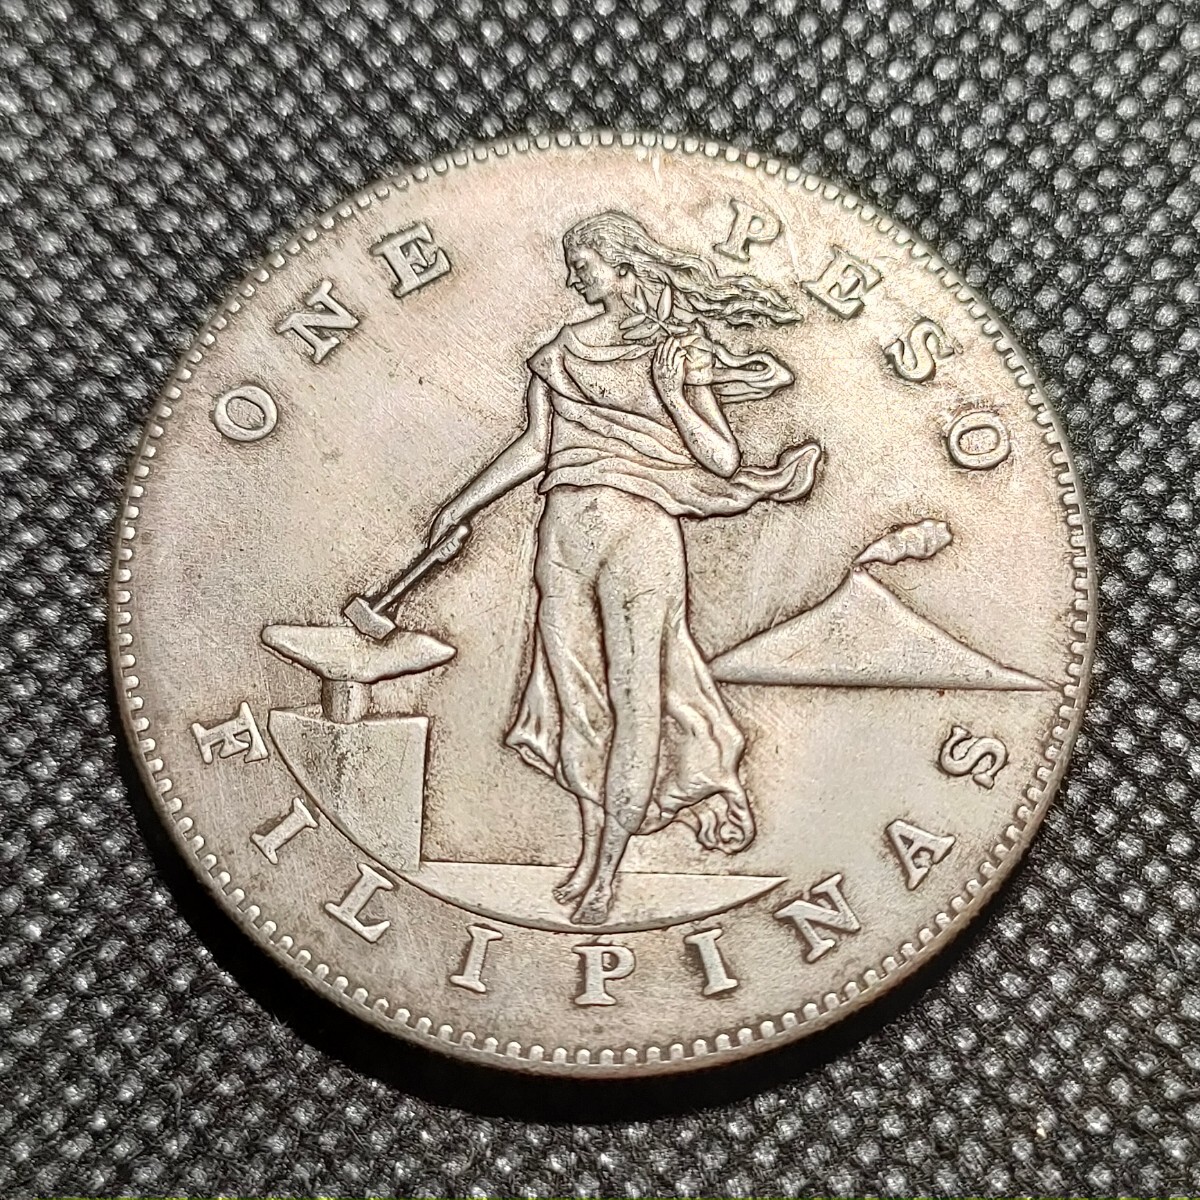 6757 フィリピン コイン 海外古銭 アンティークコレクションの画像1